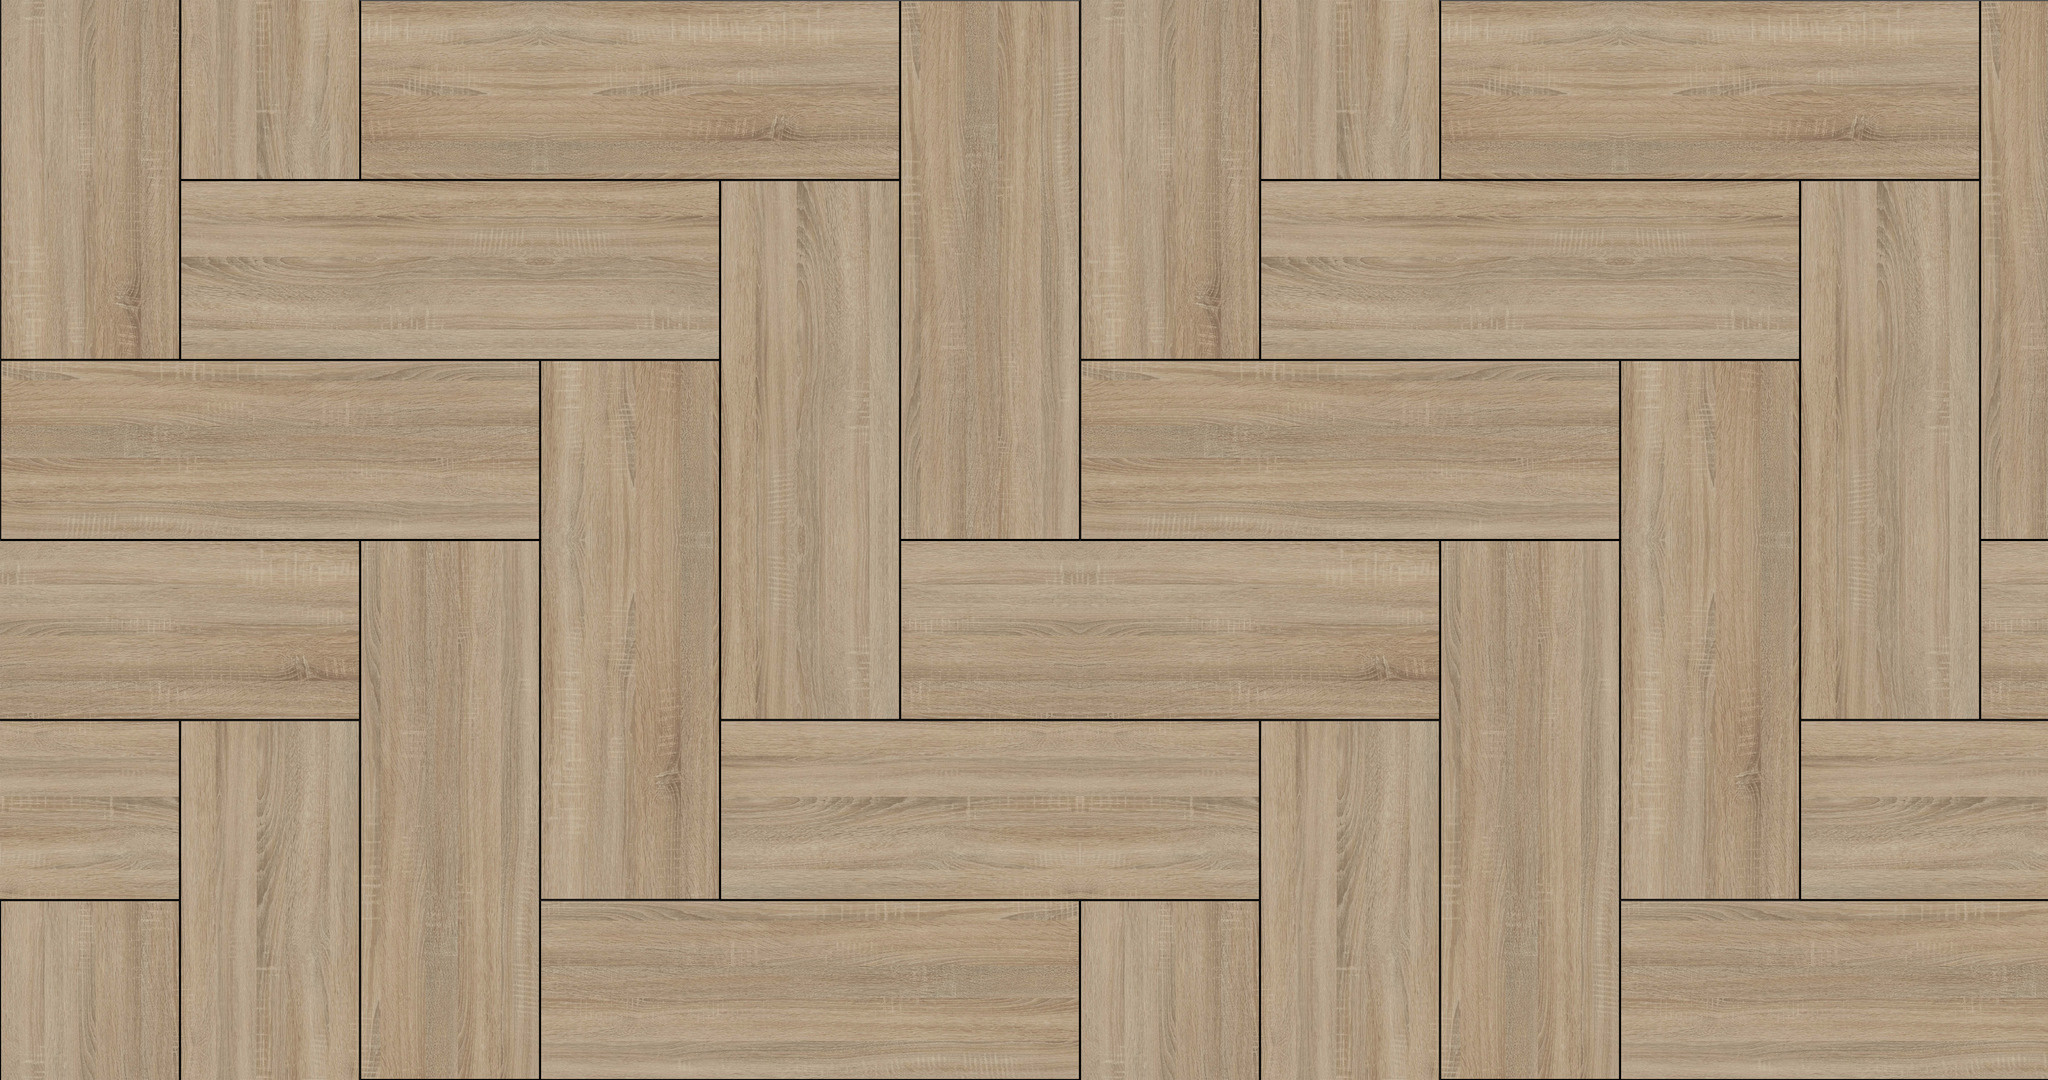 Hardwood Floor, Stacked herringbone parquet, Elegant wood texture, 2050x1080 HD Desktop